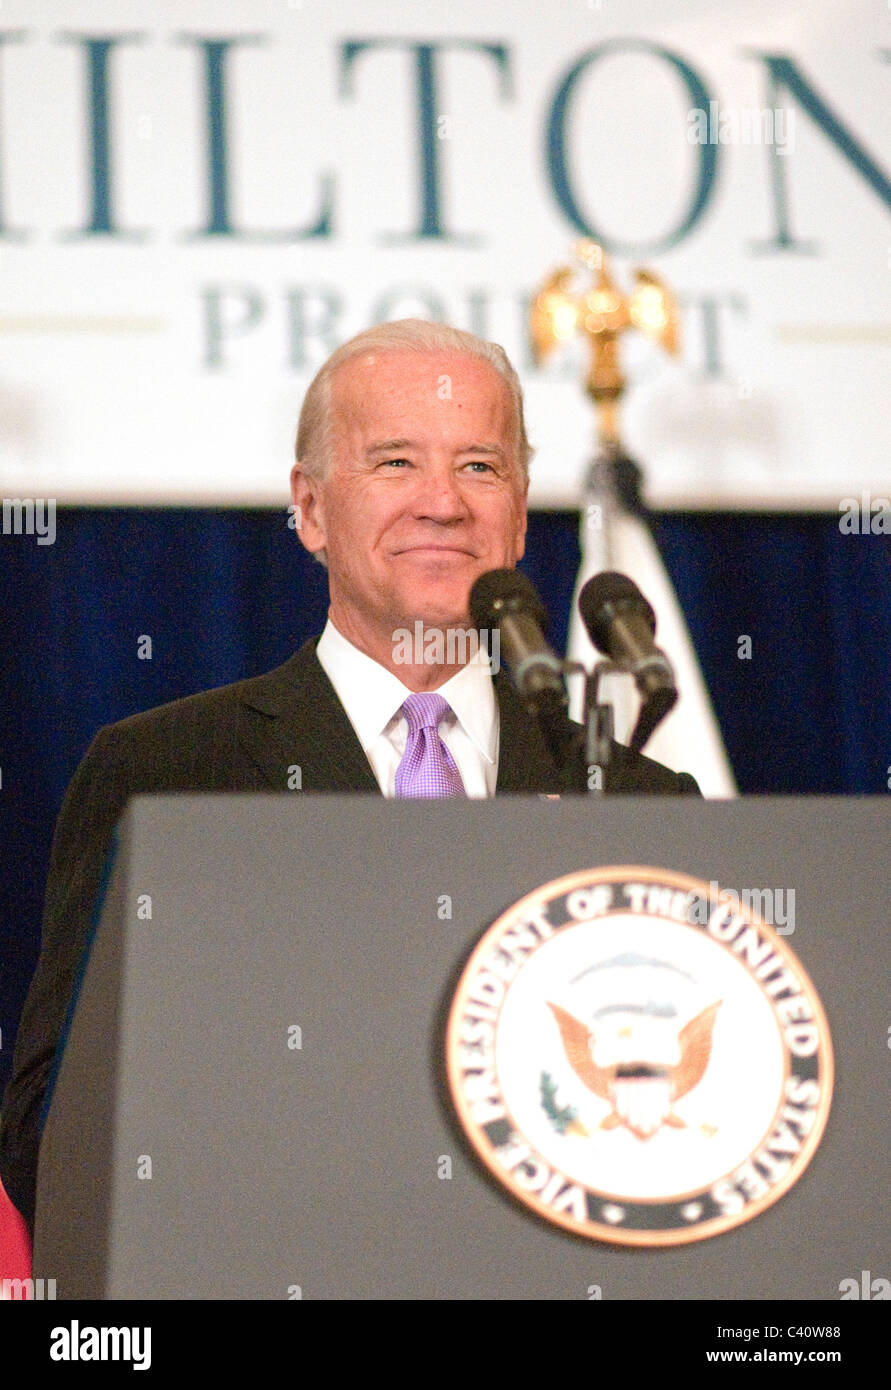 Le vice-président Joe Biden prend la parole à l'événement de lancement du programme 2010 Projet de Hamilton. Banque D'Images